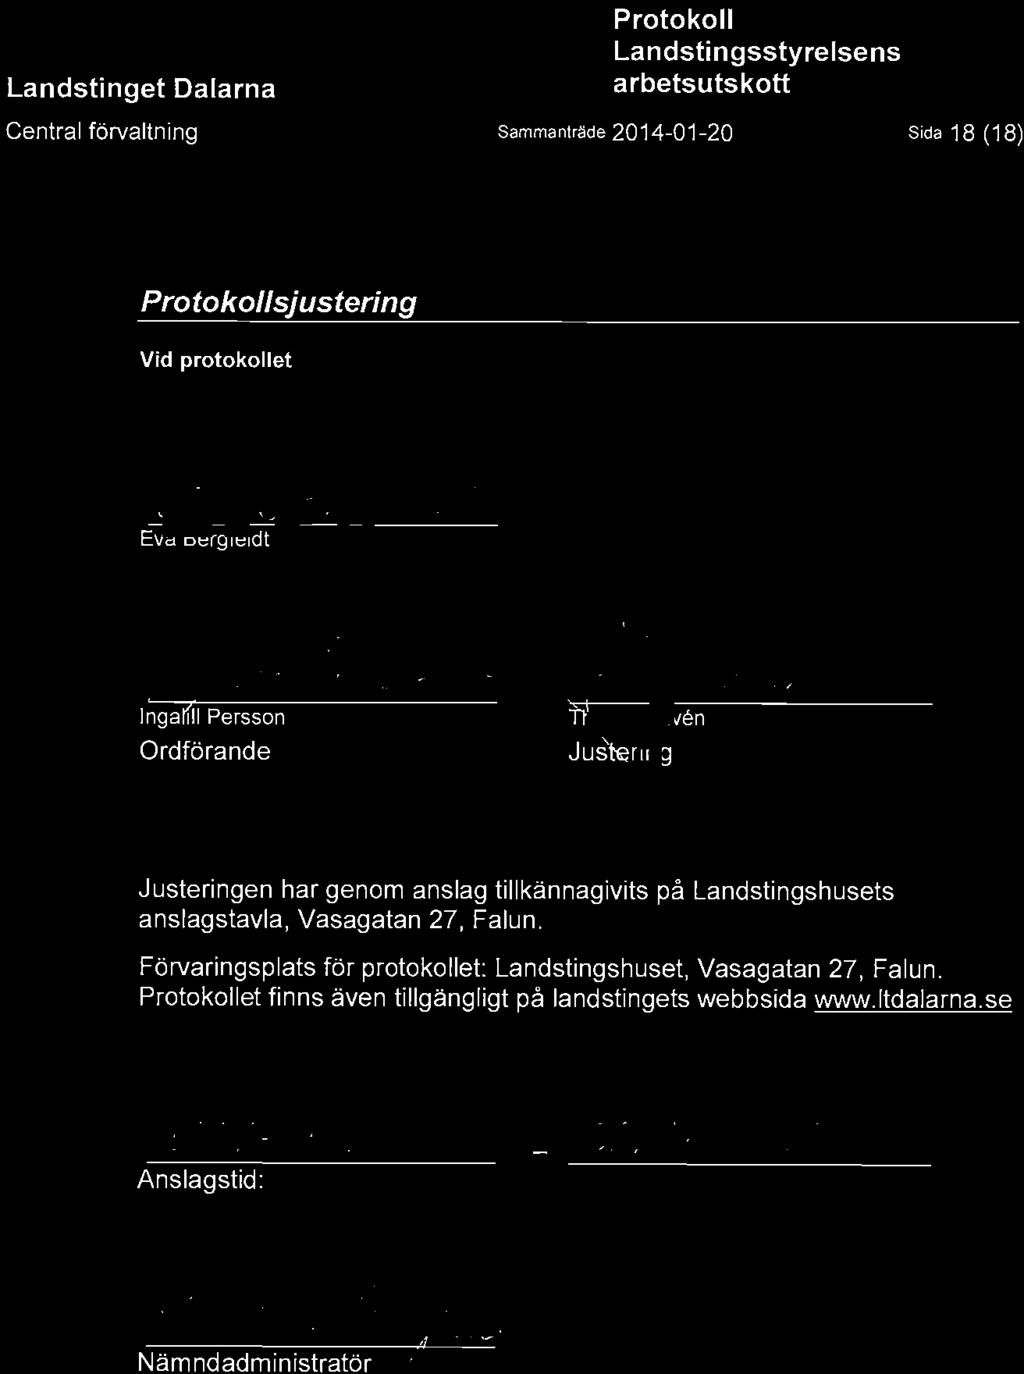 Central forvaltning Sammantrade 2014-01-20 Sida 18 (18) sjustering Vid protokoliet Eva Bergfeldt (j Ingalfll Persson Ordforande Tlv6n Jus^ririg Justeringen har genom anslag tillkannagivits pa